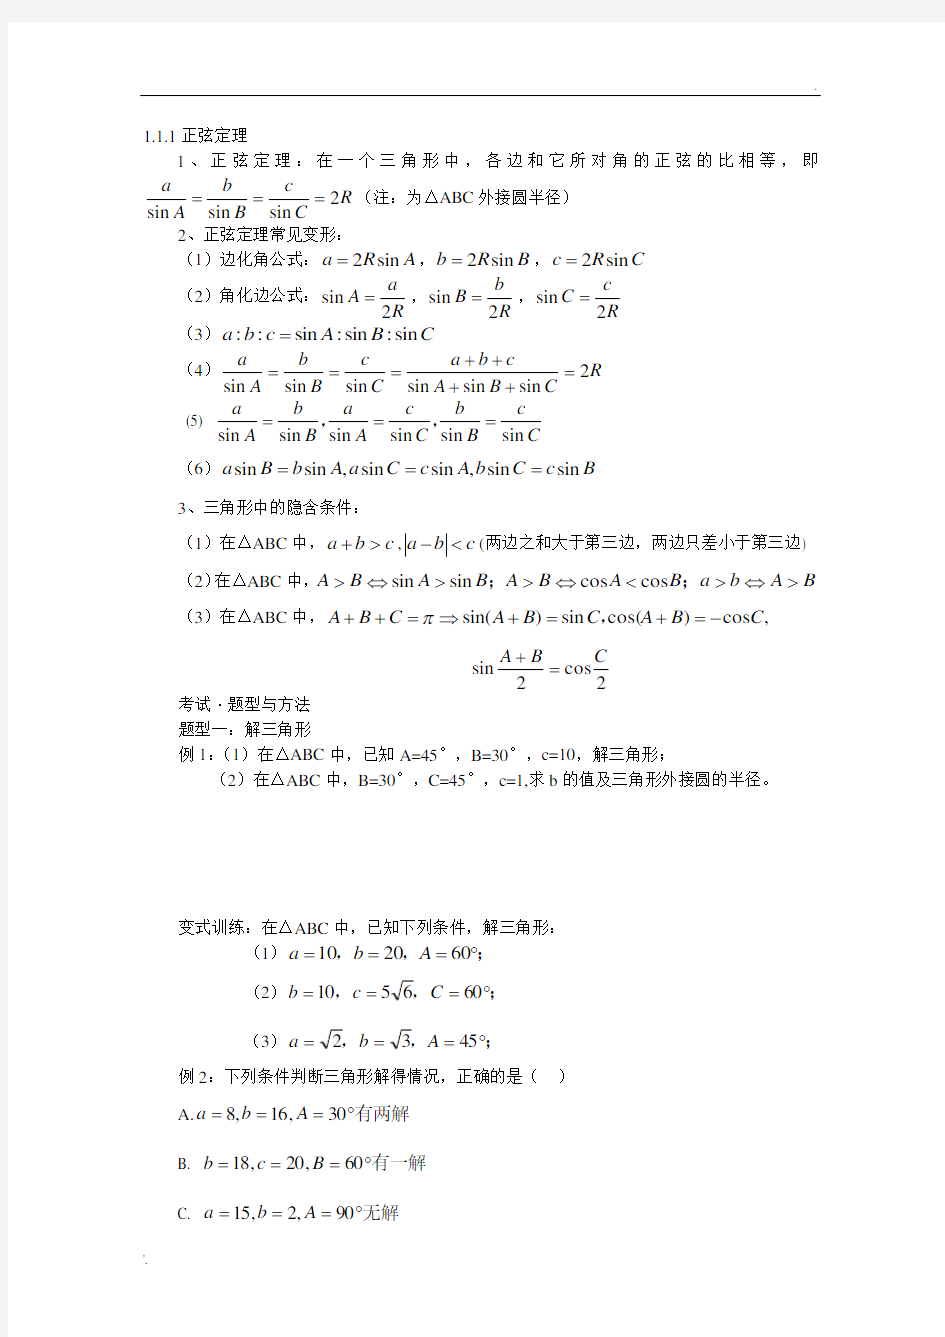 1.1.1正弦定理公式及练习题